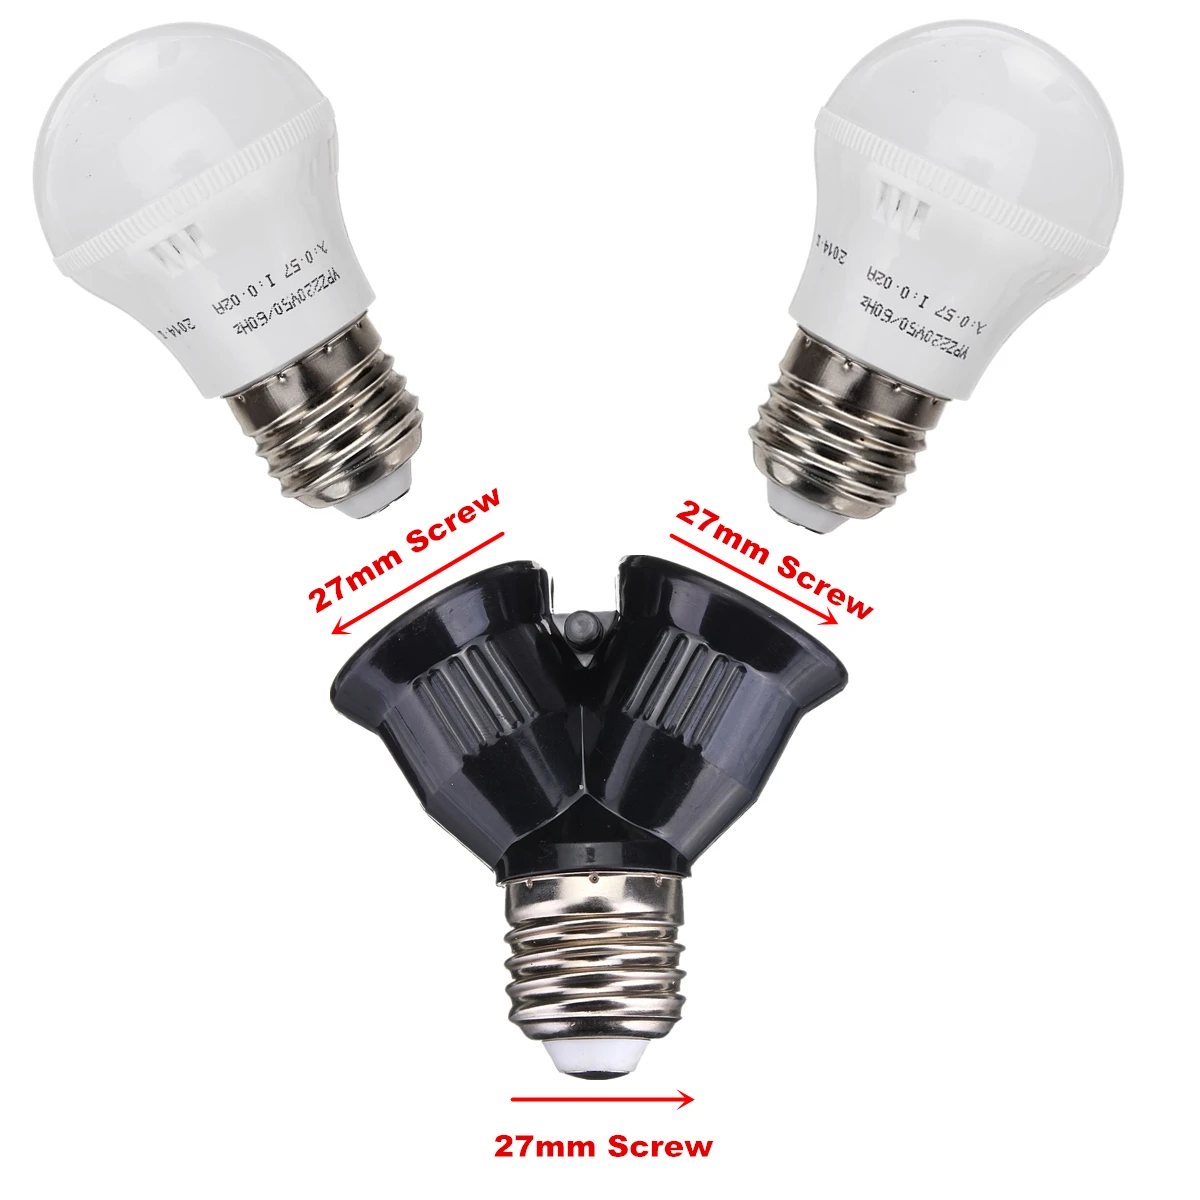 E27 двойной базы света лампочка, розетка светодиодный галогенные компактные люминесцентные лампы отклонения в размерах на 1-2 сплиттер адаптер держатель